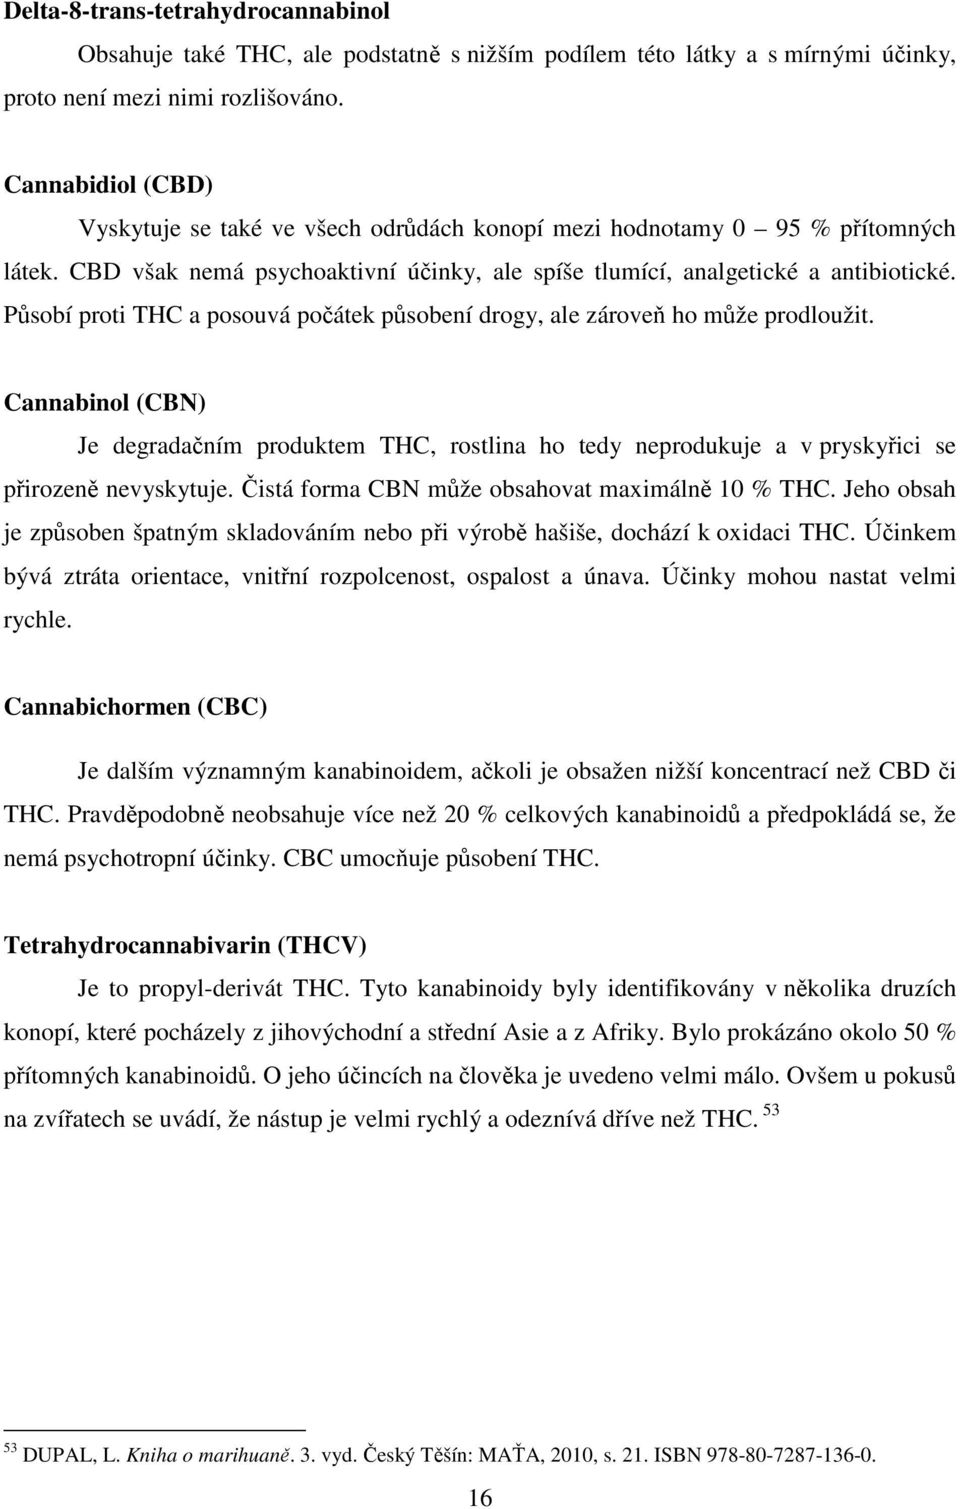 Působí proti THC a posouvá počátek působení drogy, ale zároveň ho může prodloužit. Cannabinol (CBN) Je degradačním produktem THC, rostlina ho tedy neprodukuje a v pryskyřici se přirozeně nevyskytuje.